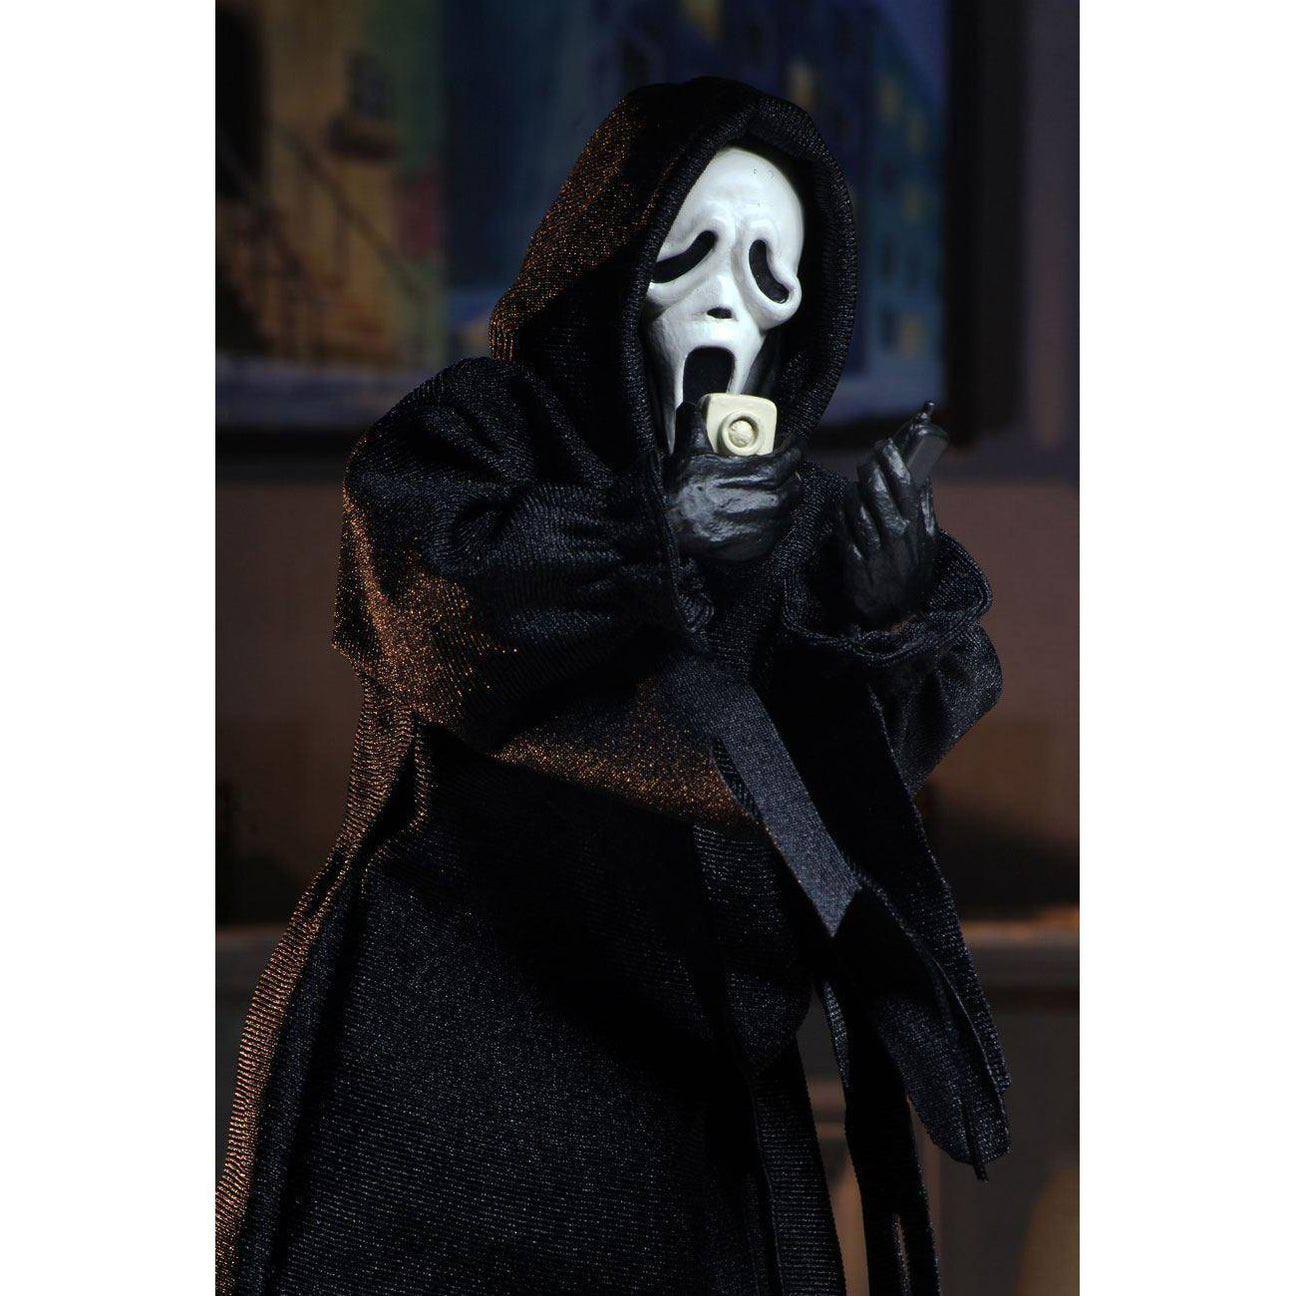 Scream: Ghostface (Retro) - Clothed 8 inch VORBESTELLUNG!-Actionfiguren-NECA-mighty-underground